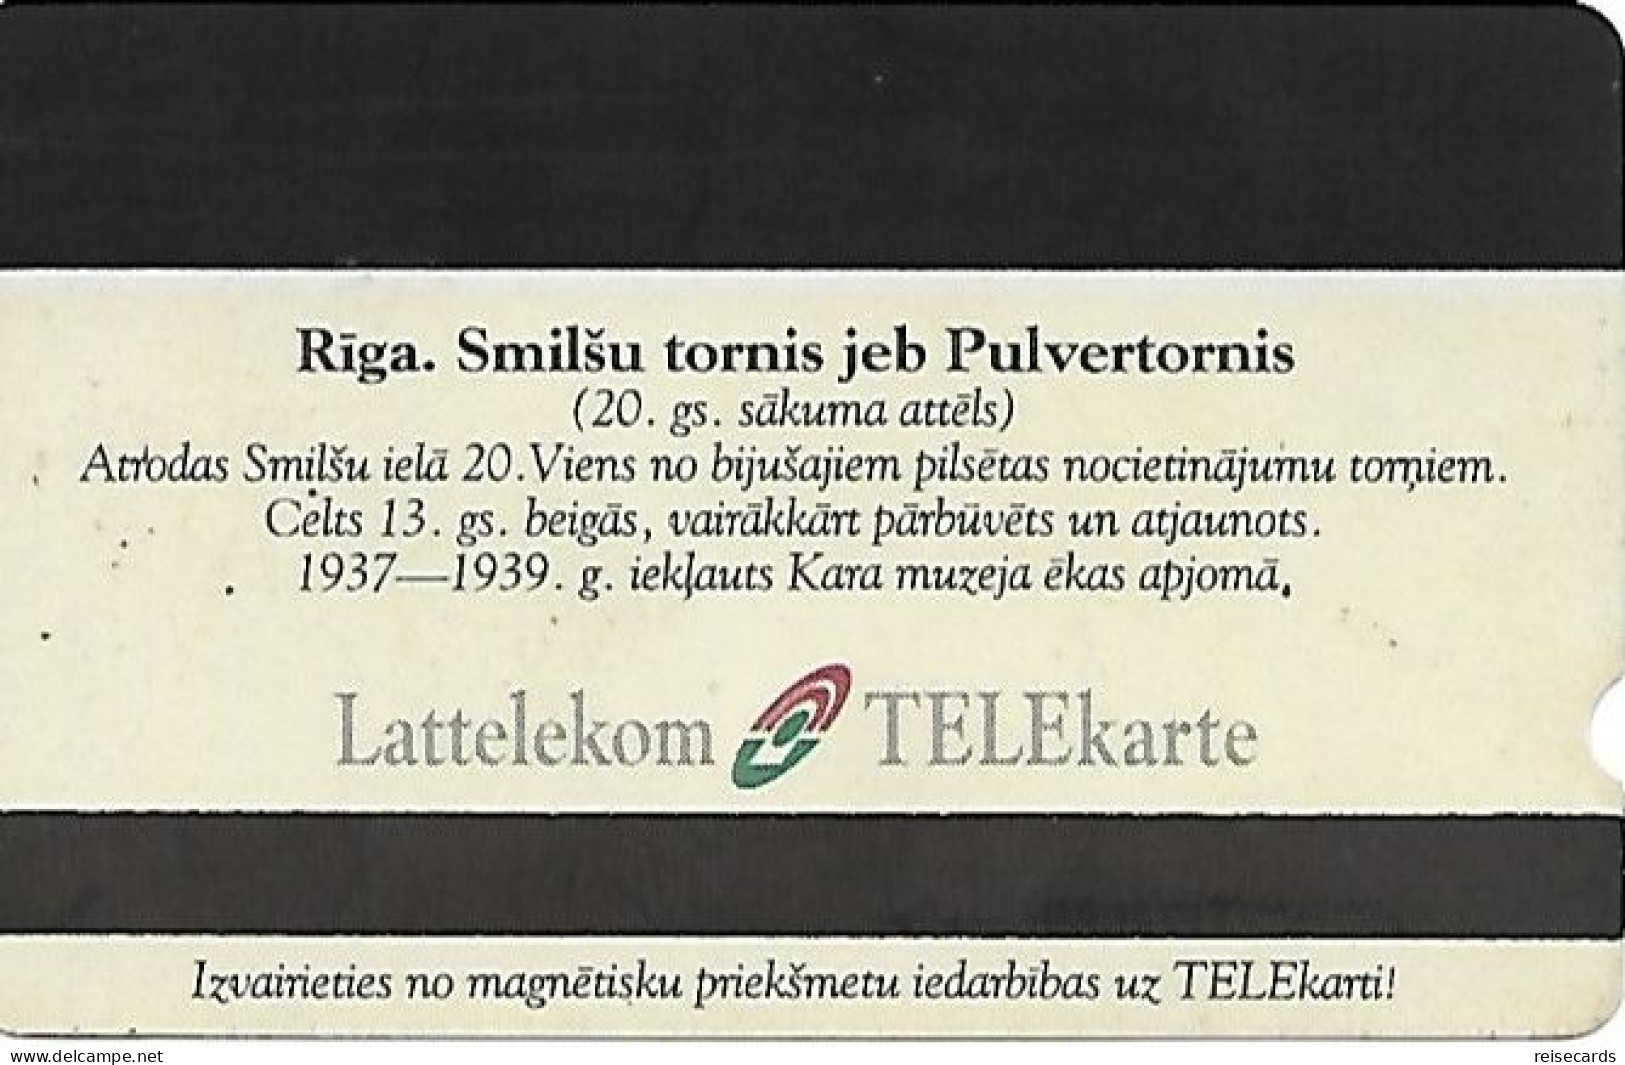 Latvia: Lattelekom - Riga, Pulvertornis - Latvia